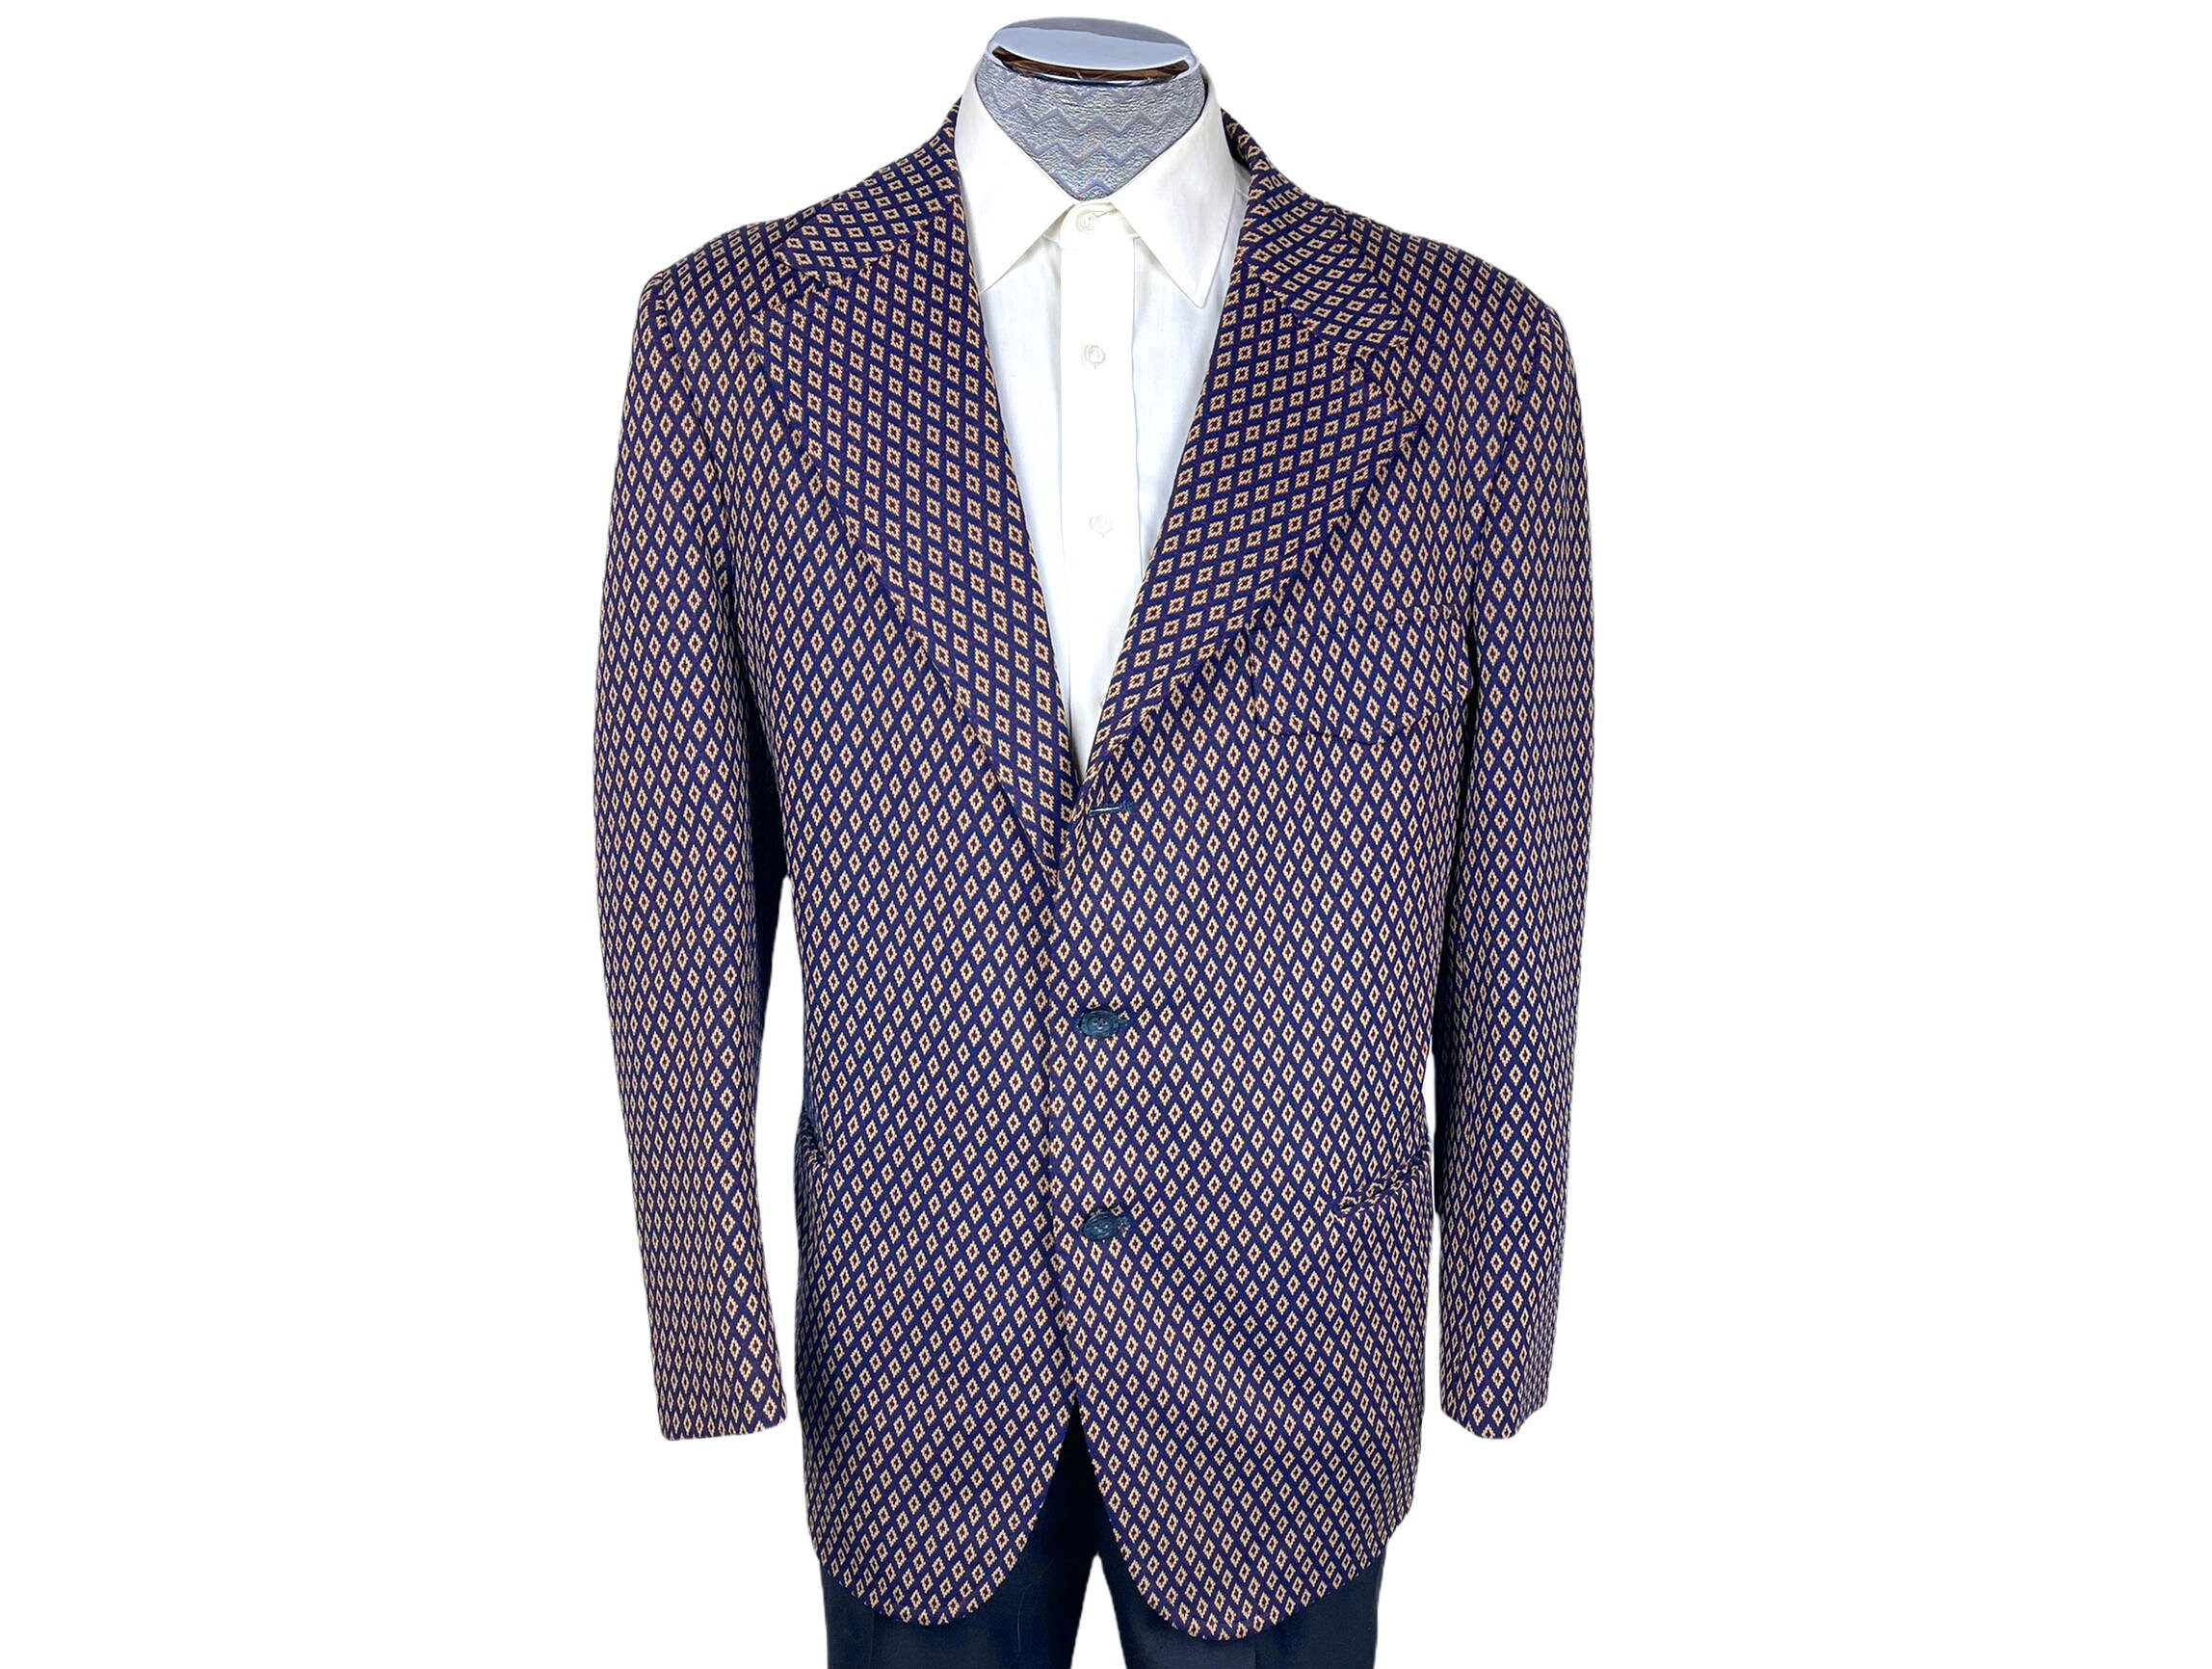 Vintage 1970's  Men's Sports Jacket Blue Plaid Polyester Double Knit Size 40 L